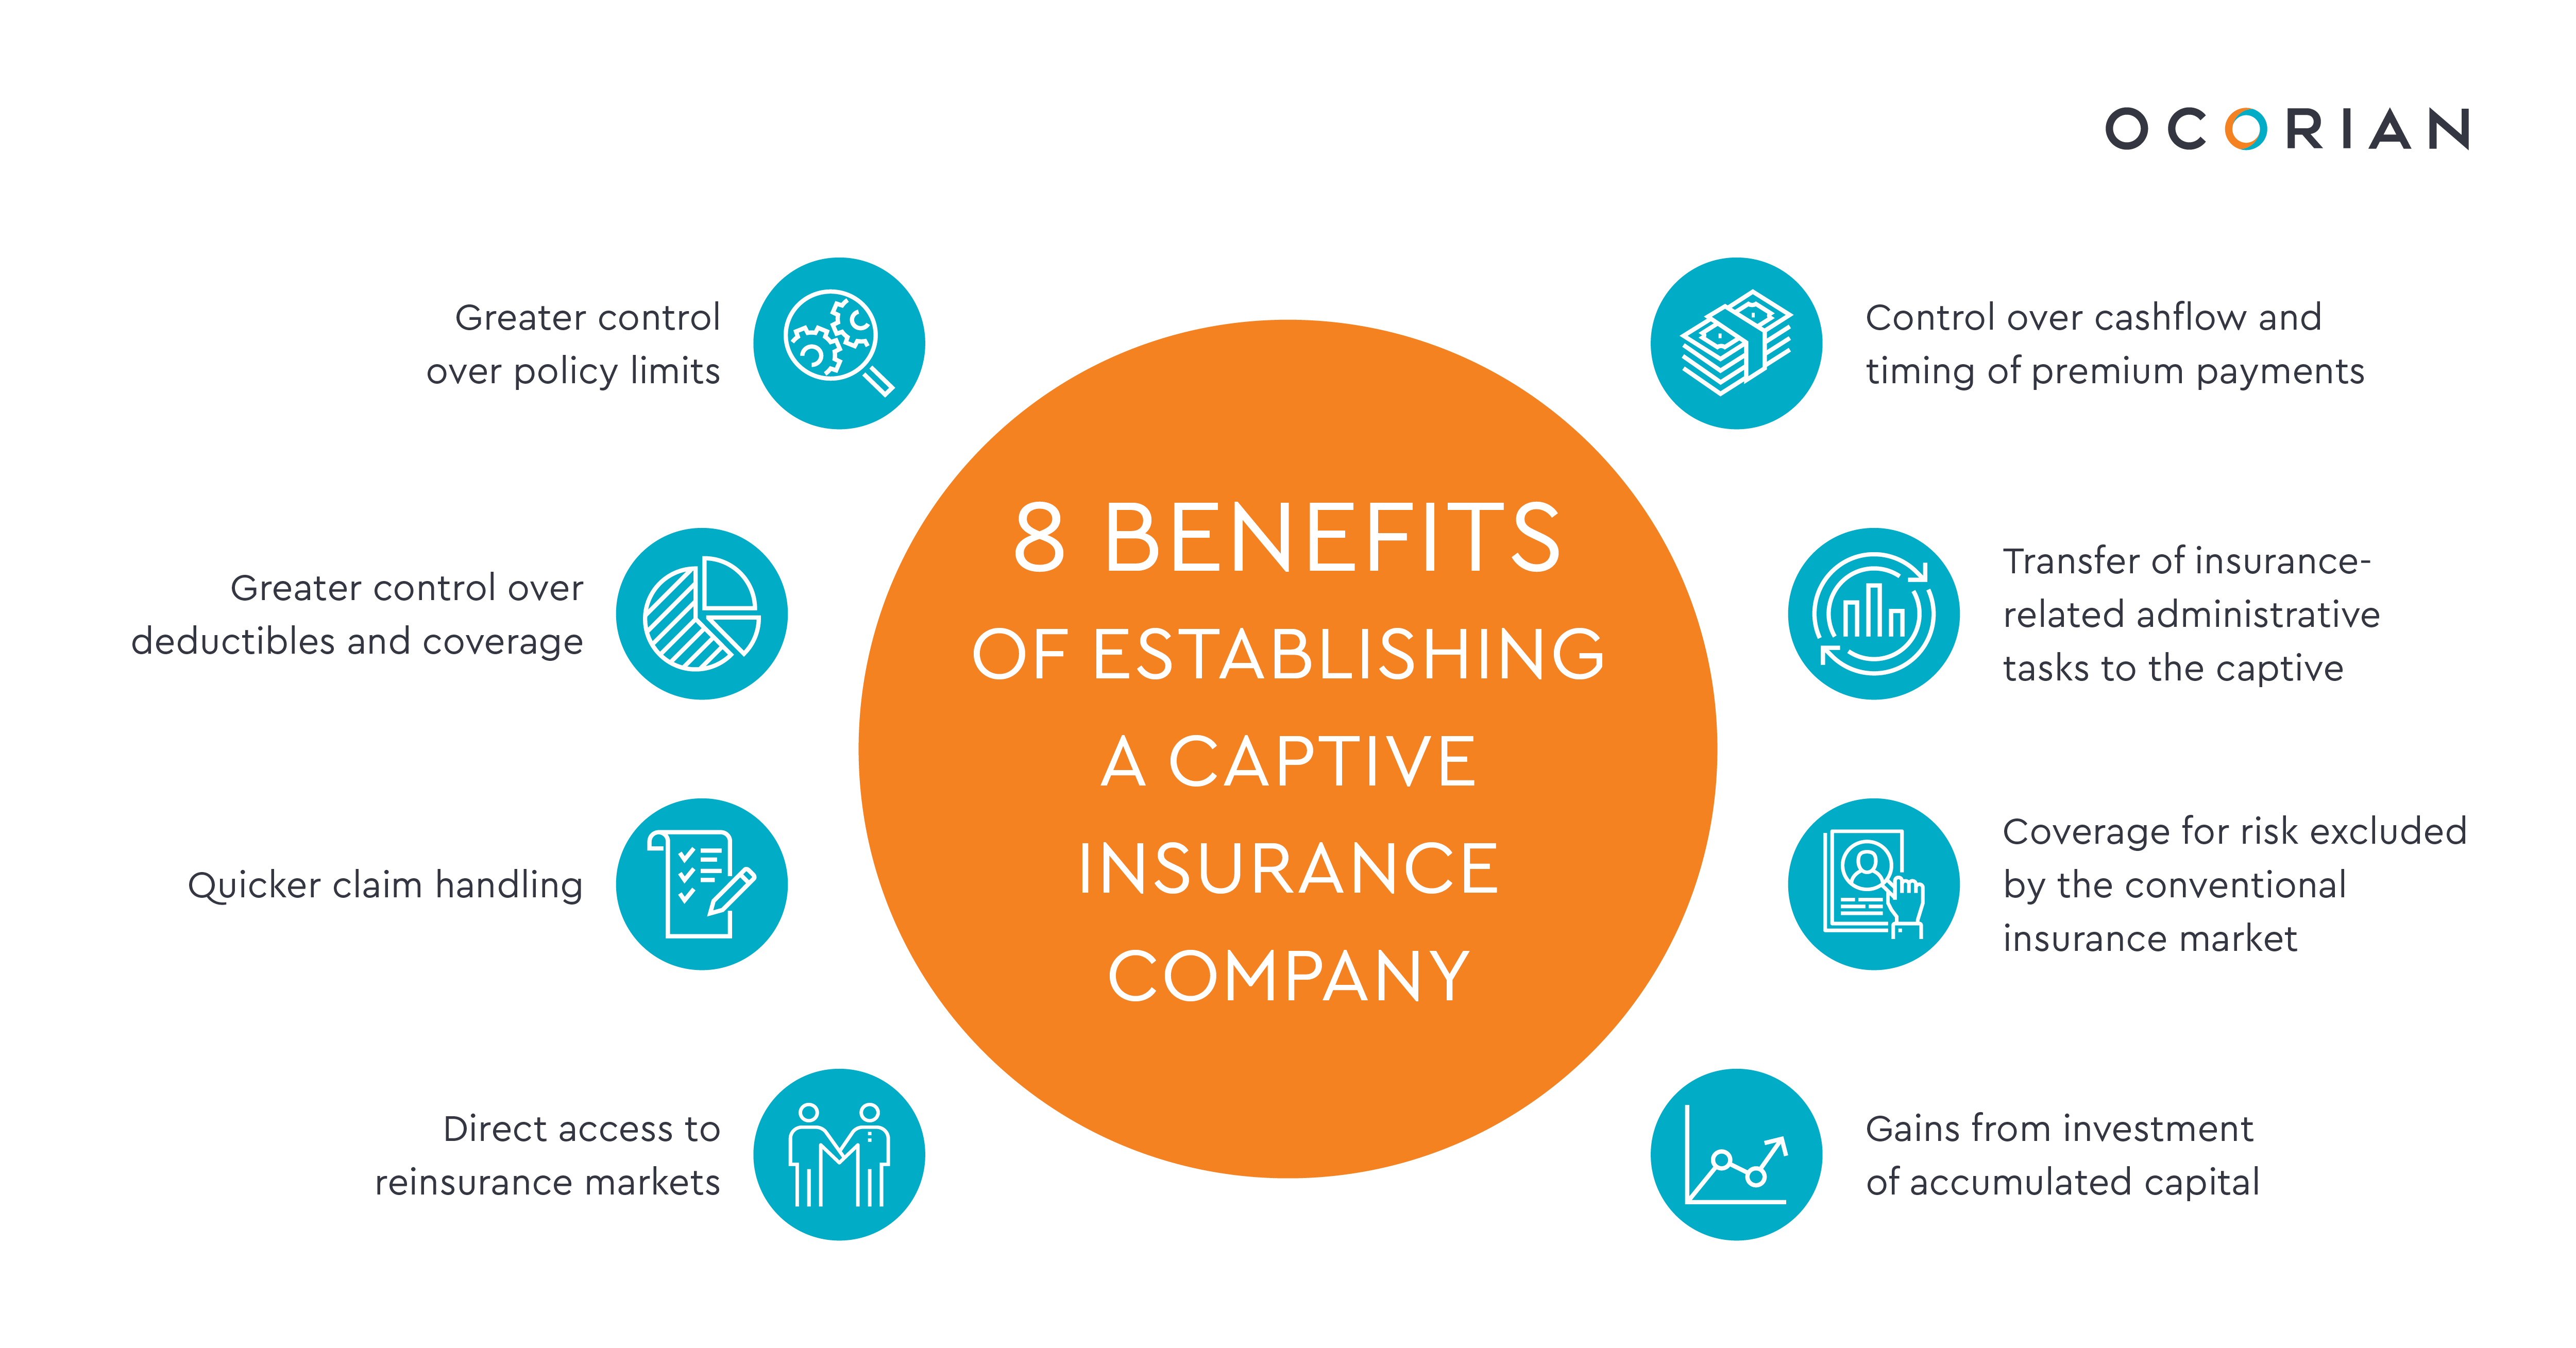 key-benefits-of-establishing-a-captive-insurance-company-ocorian